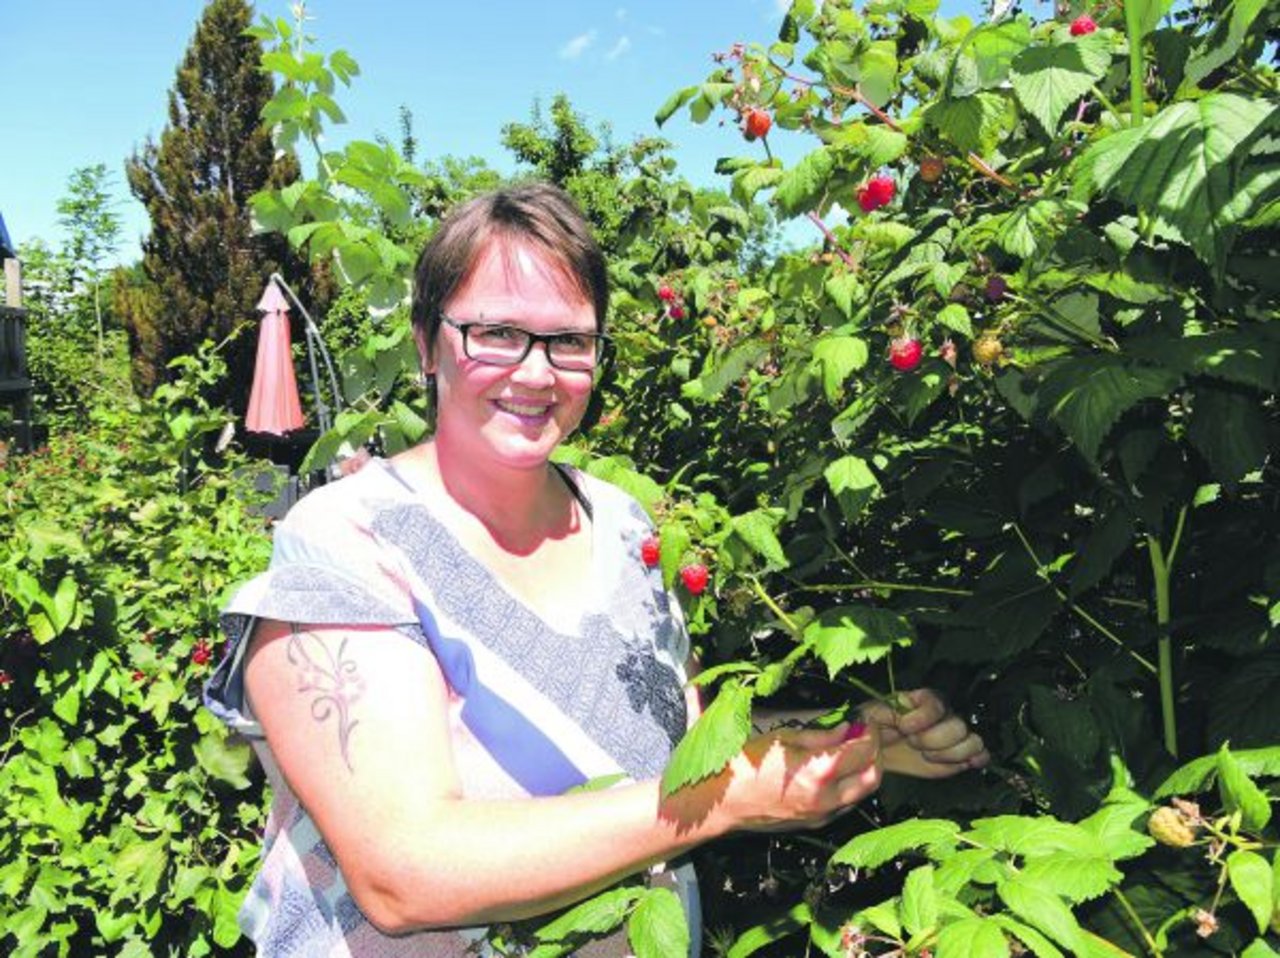 Denise Heiniger-Graber liest mit Genuss Beeren vom Strauch in ihrem Garten. Die Beeren sind für ihre drei Söhne und ihren Mann. (Bild Barbara Heiniger)